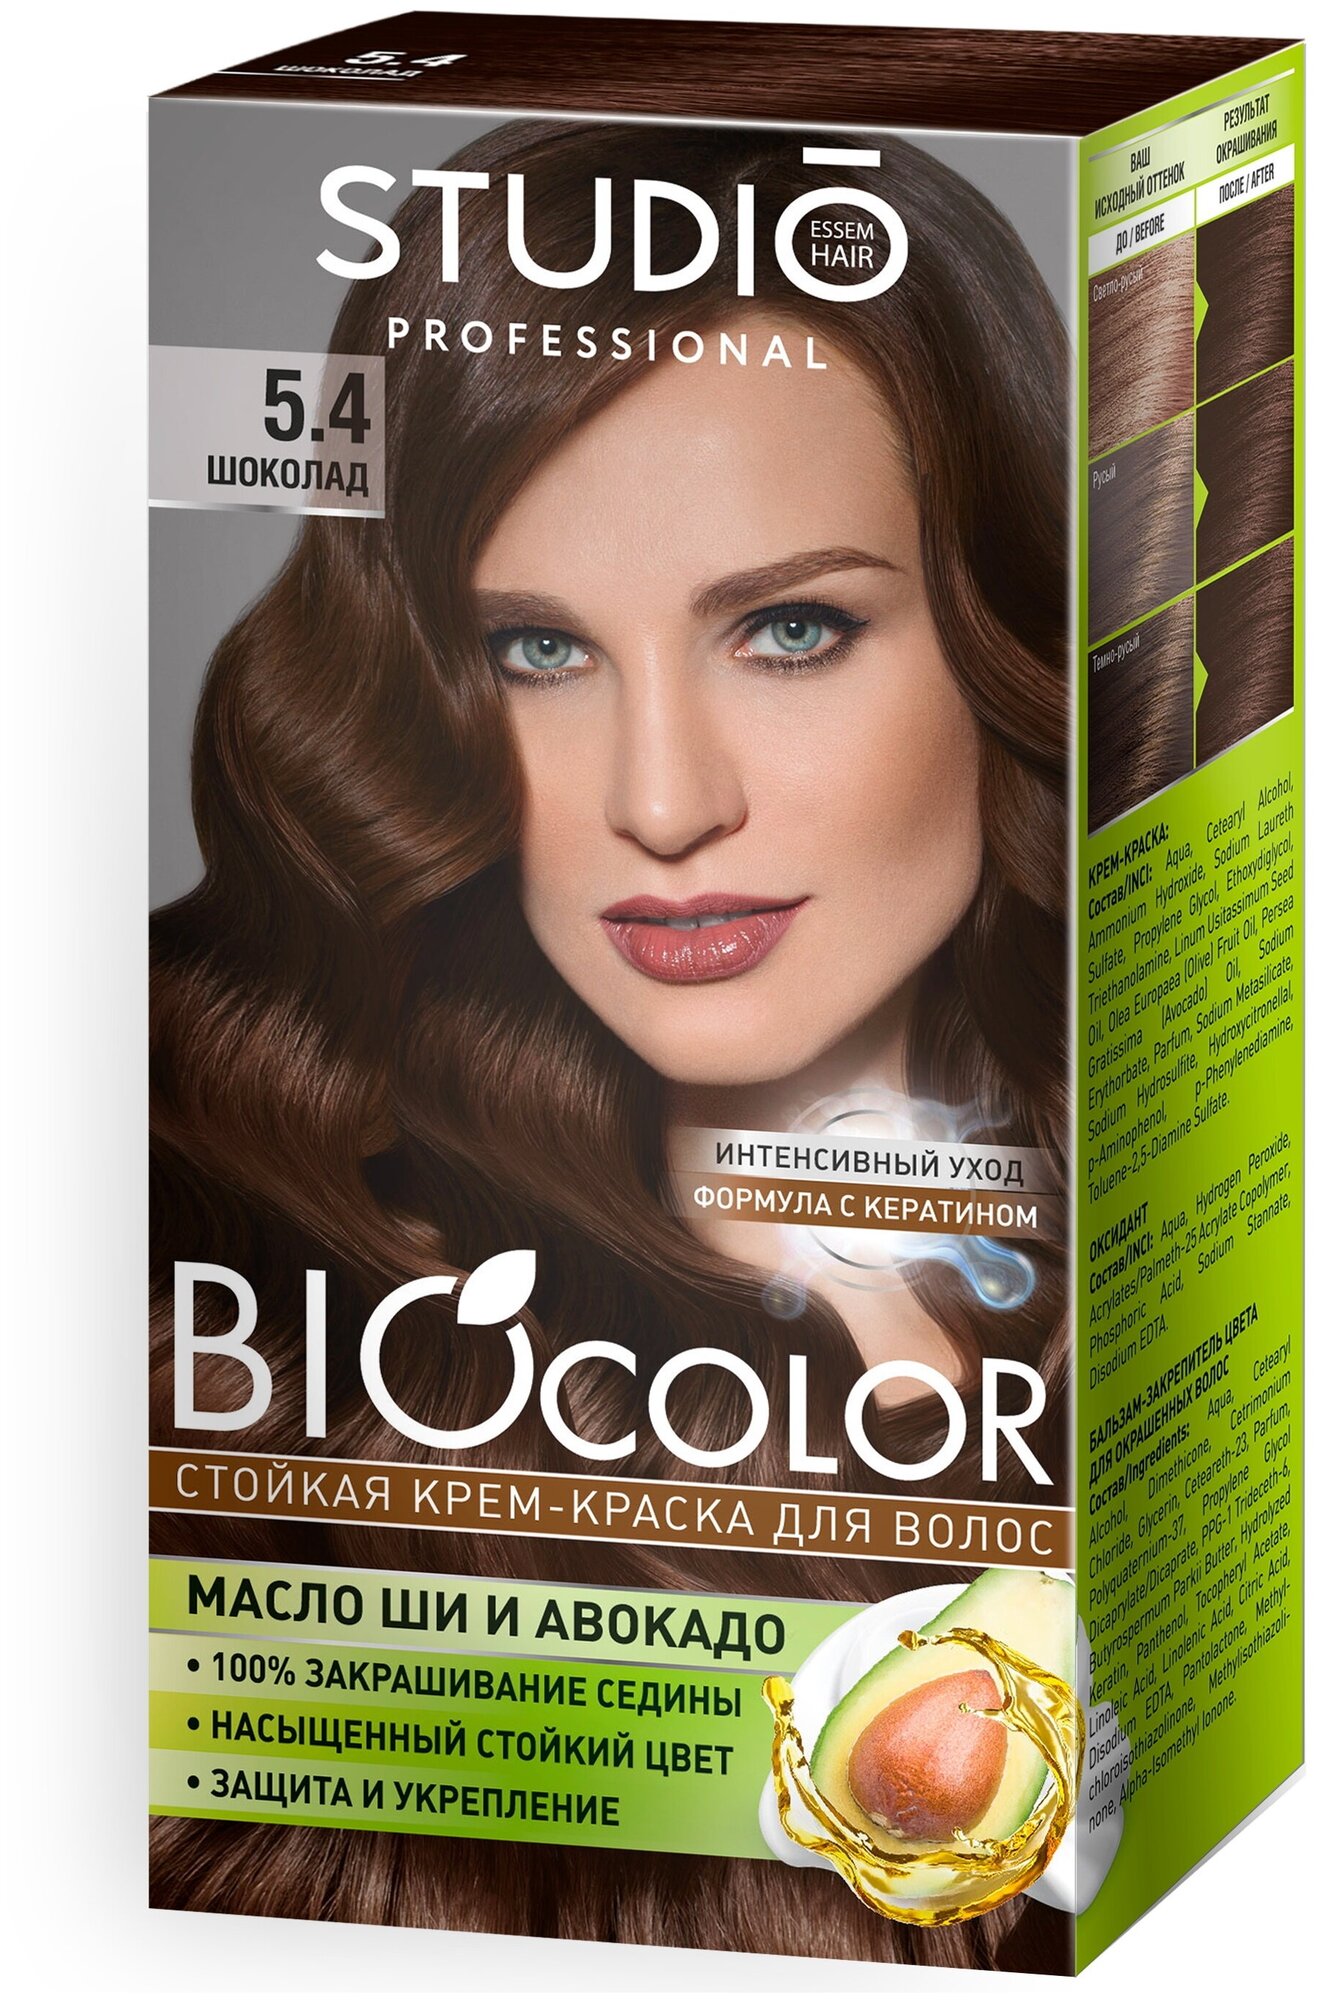 Комплект BIOCOLOR для окрашивания волос STUDIO PROFESSIONAL 5.4 шоколад 2*50+15 мл